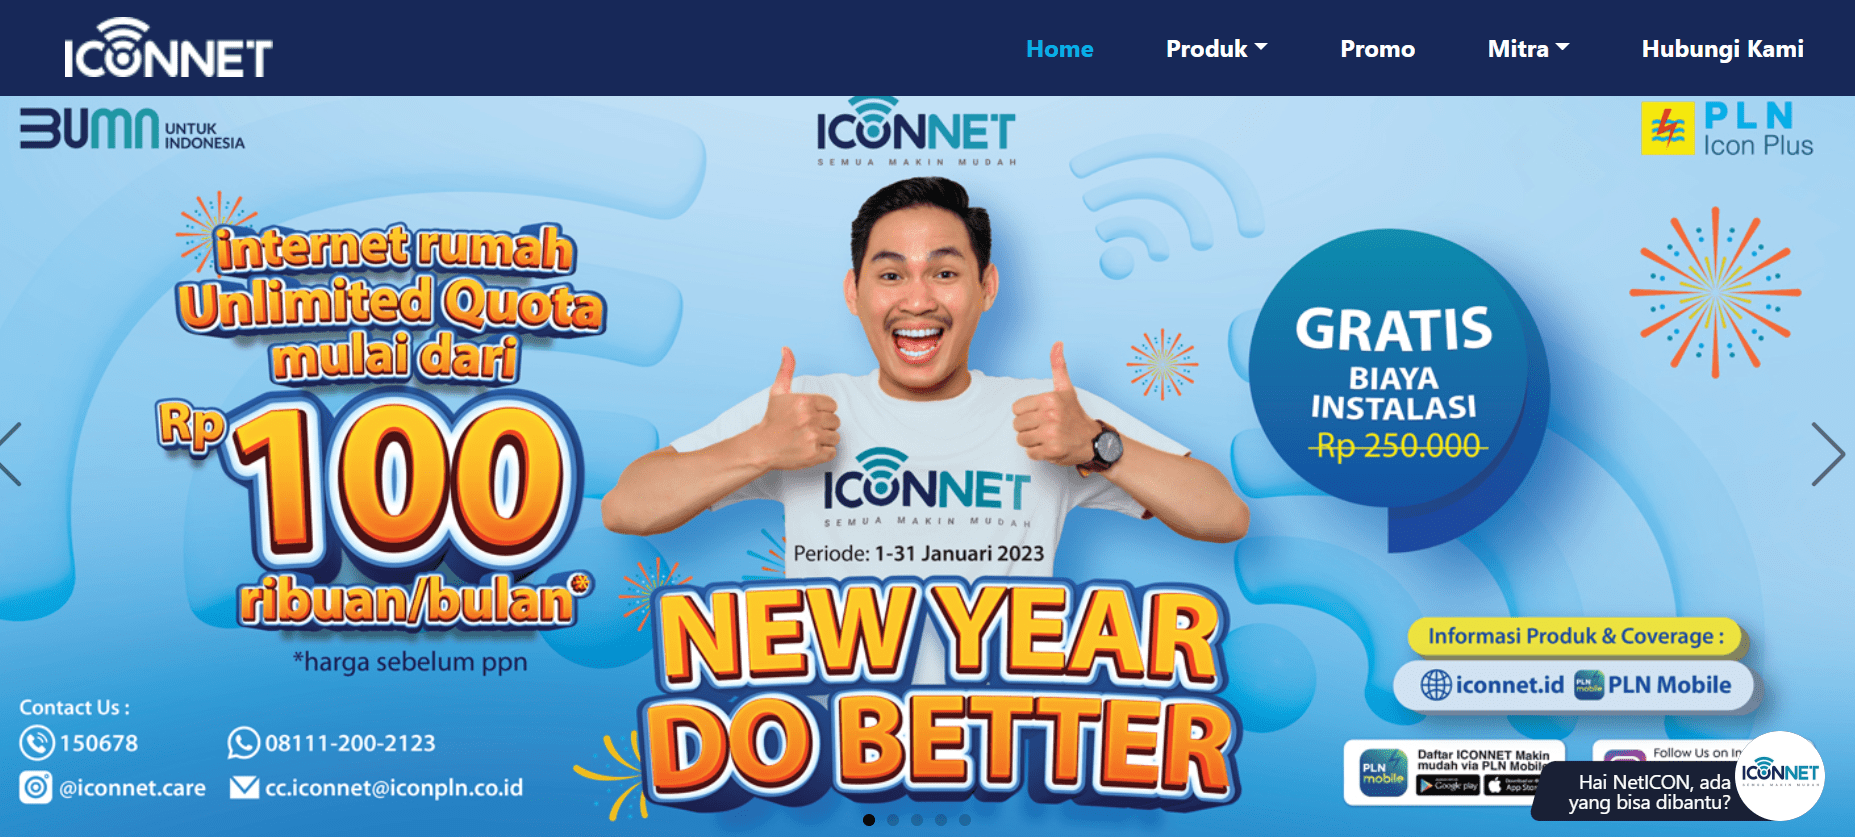 Lagi Ada Promo, Ini Daftar Harga dan Cara Berlangganan Paket Internet Iconnect PLN